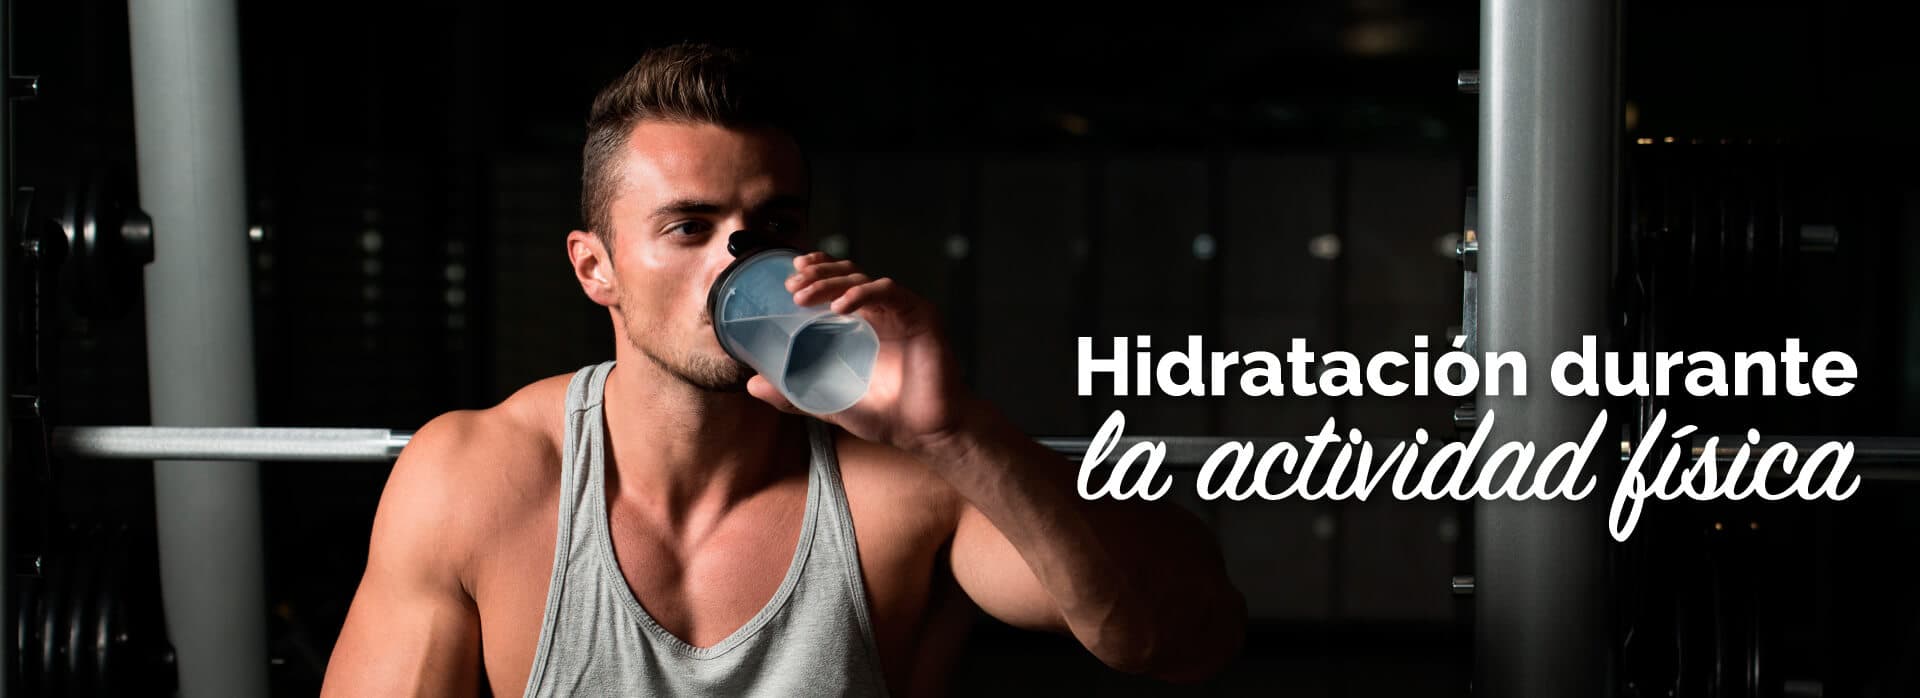 Hidratación durante la actividad fisica